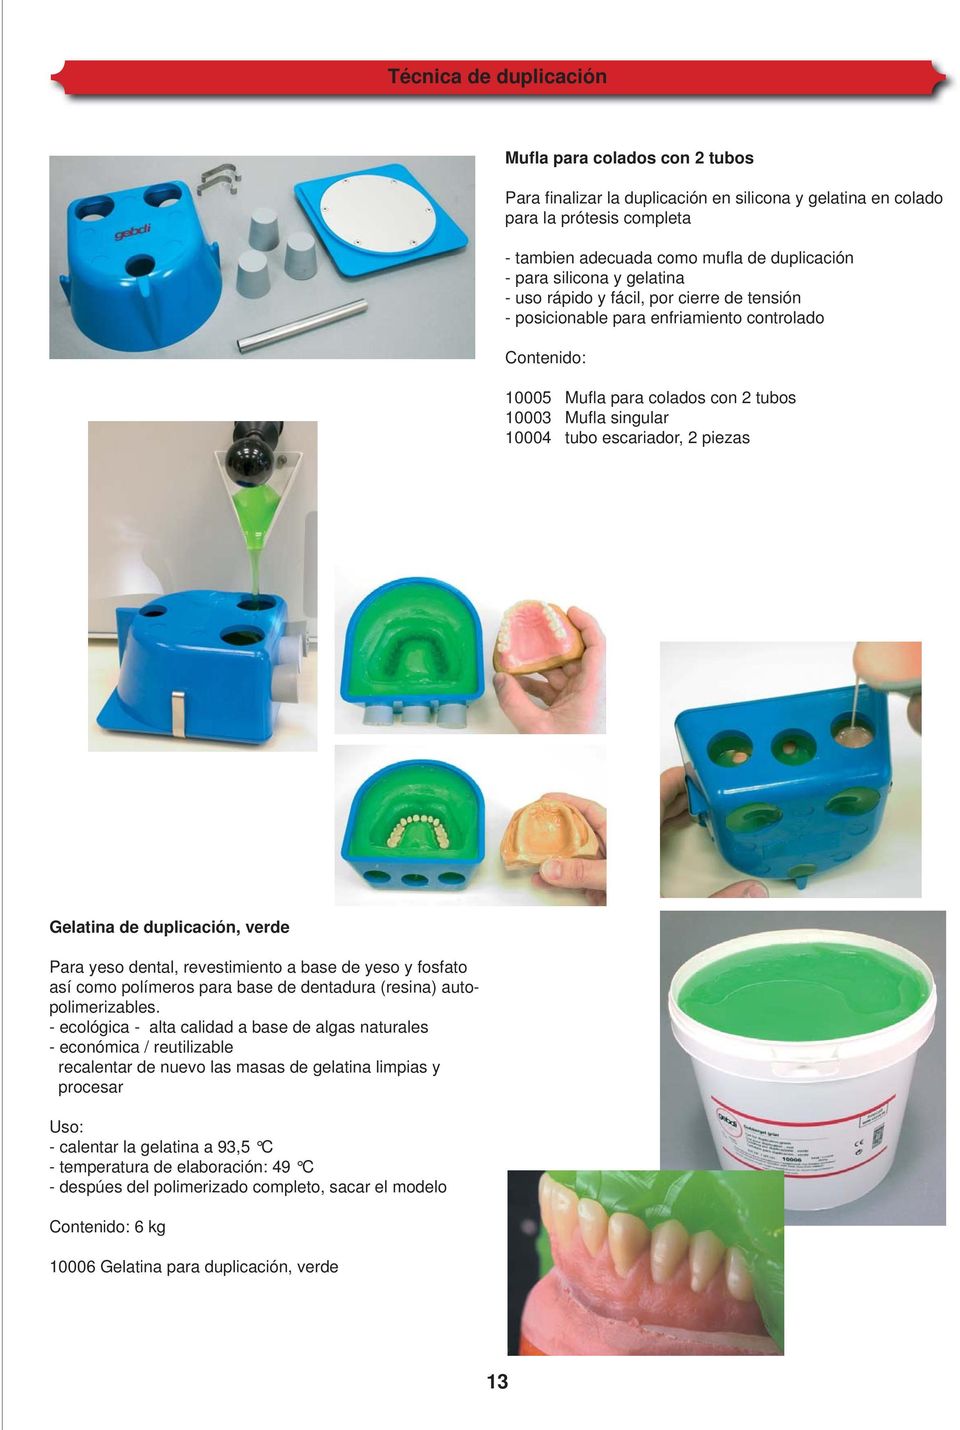 2 piezas Gelatina de duplicación, verde Para yeso dental, revestimiento a base de yeso y fosfato así como polímeros para base de dentadura (resina) autopolimerizables.